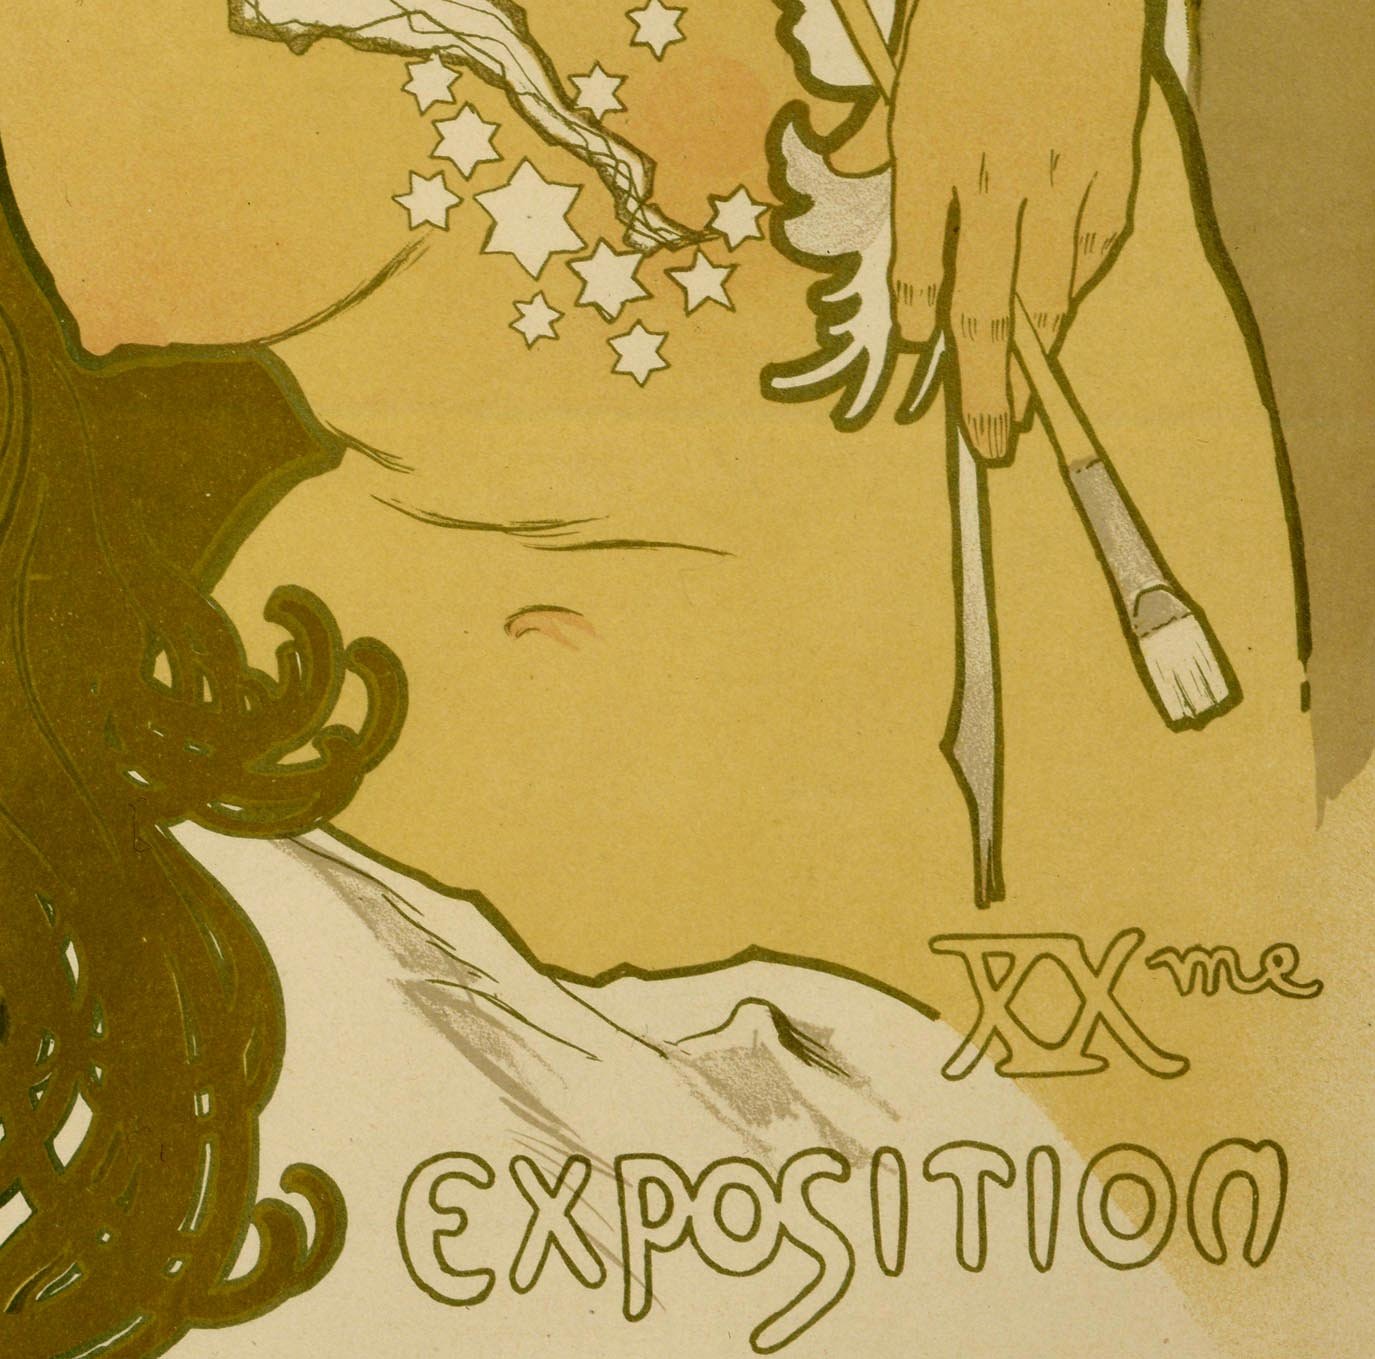 Salon Art Nouveau Vintage Poster by Mucha